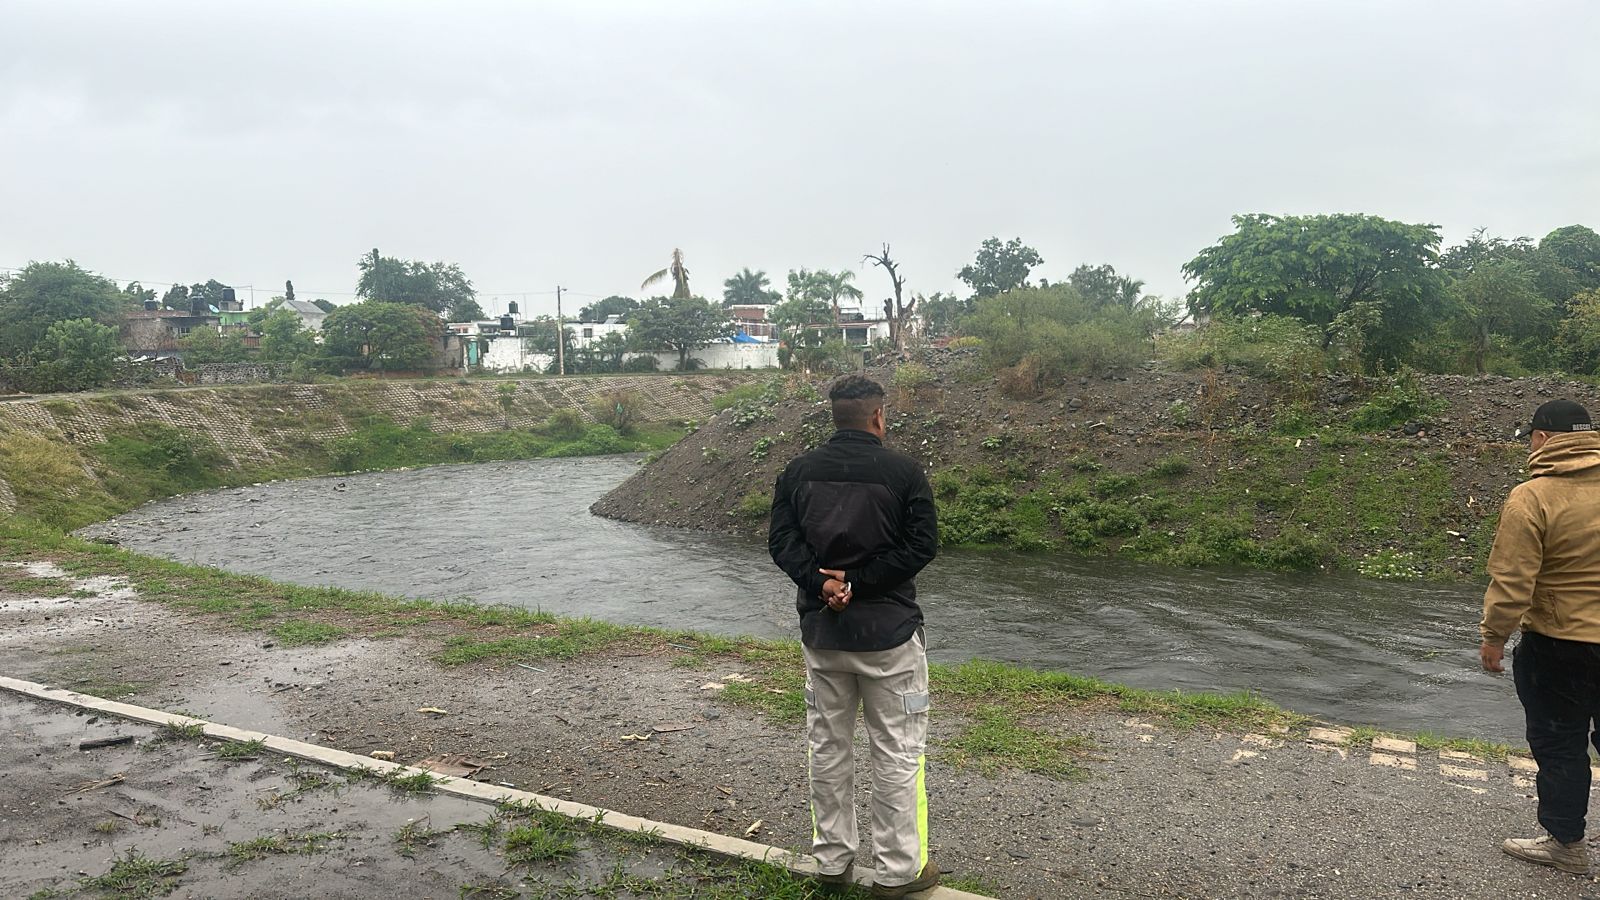 Una persona parado en un cuerpo de agua junto a un río

Descripción generada automáticamente con confianza baja